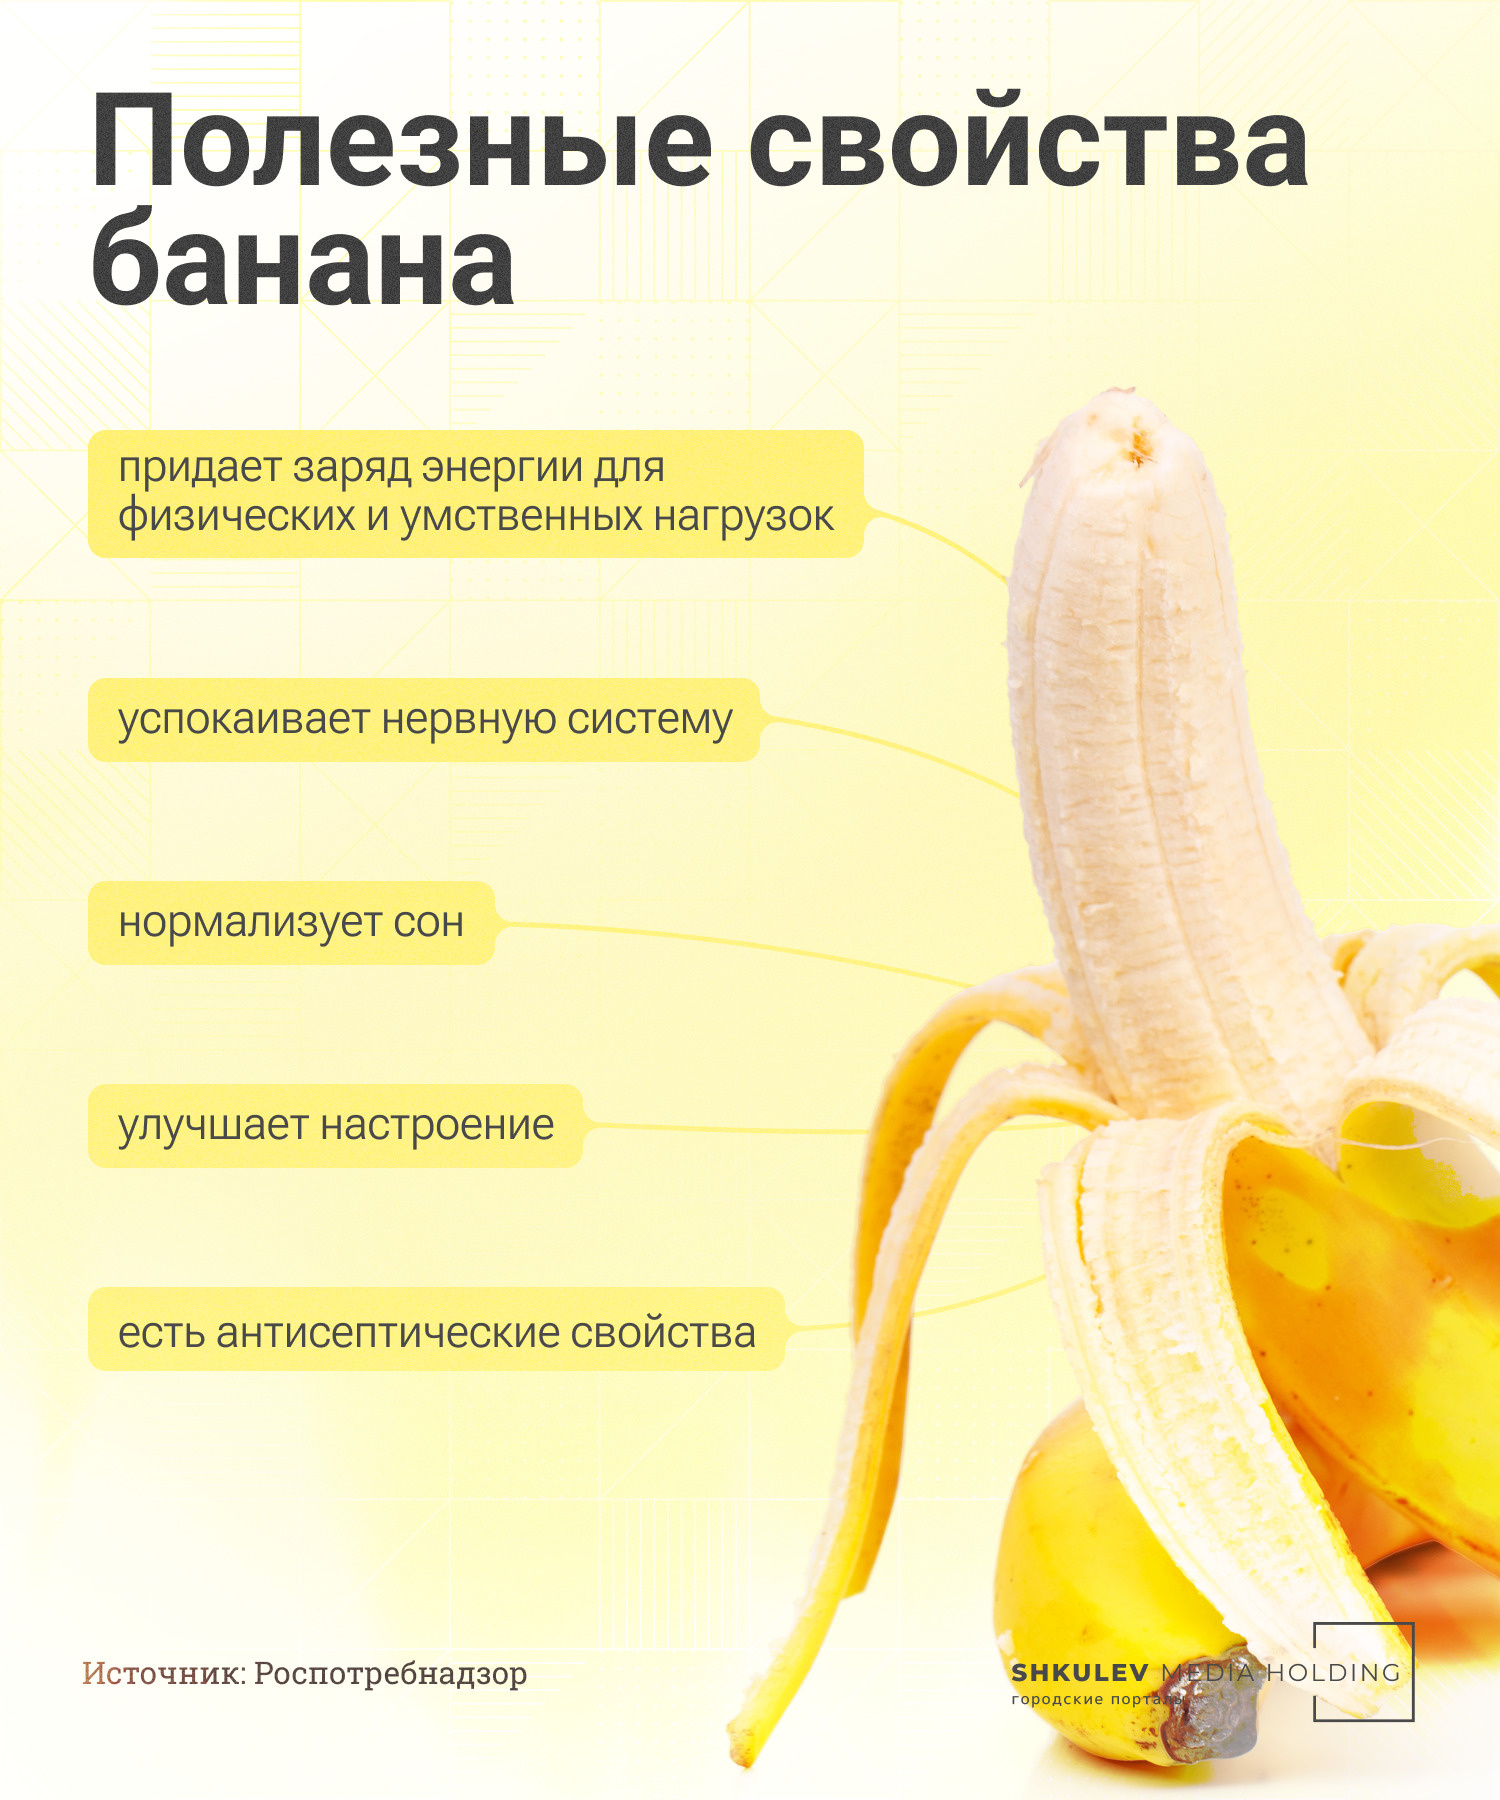 Бананы и их польза для человека